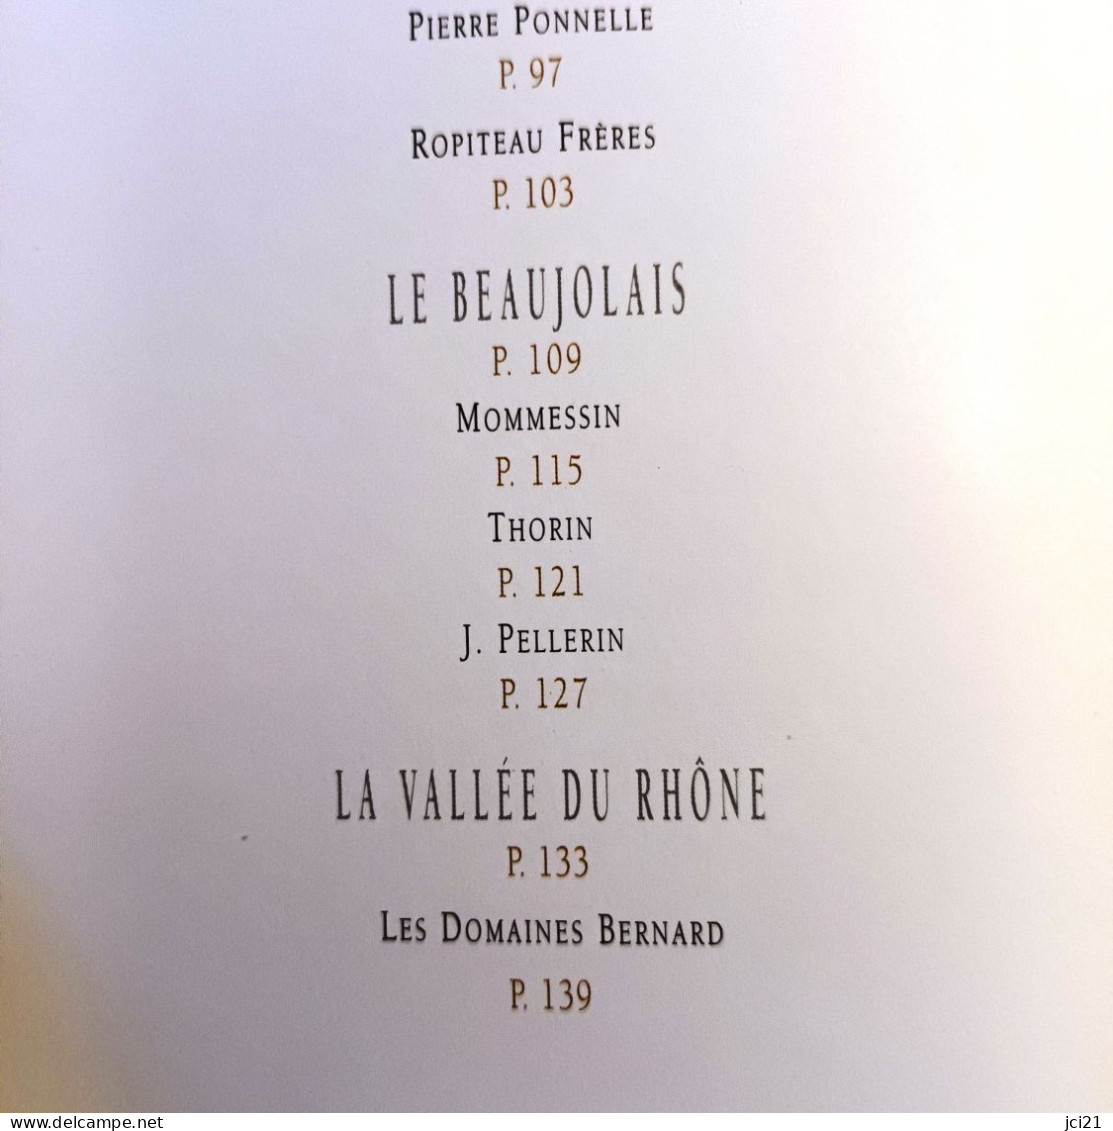 Opuscule de 197 pages sur la " Famille des grands vins " Maison BOISSET Nuits Saint Georges _RL208a -k